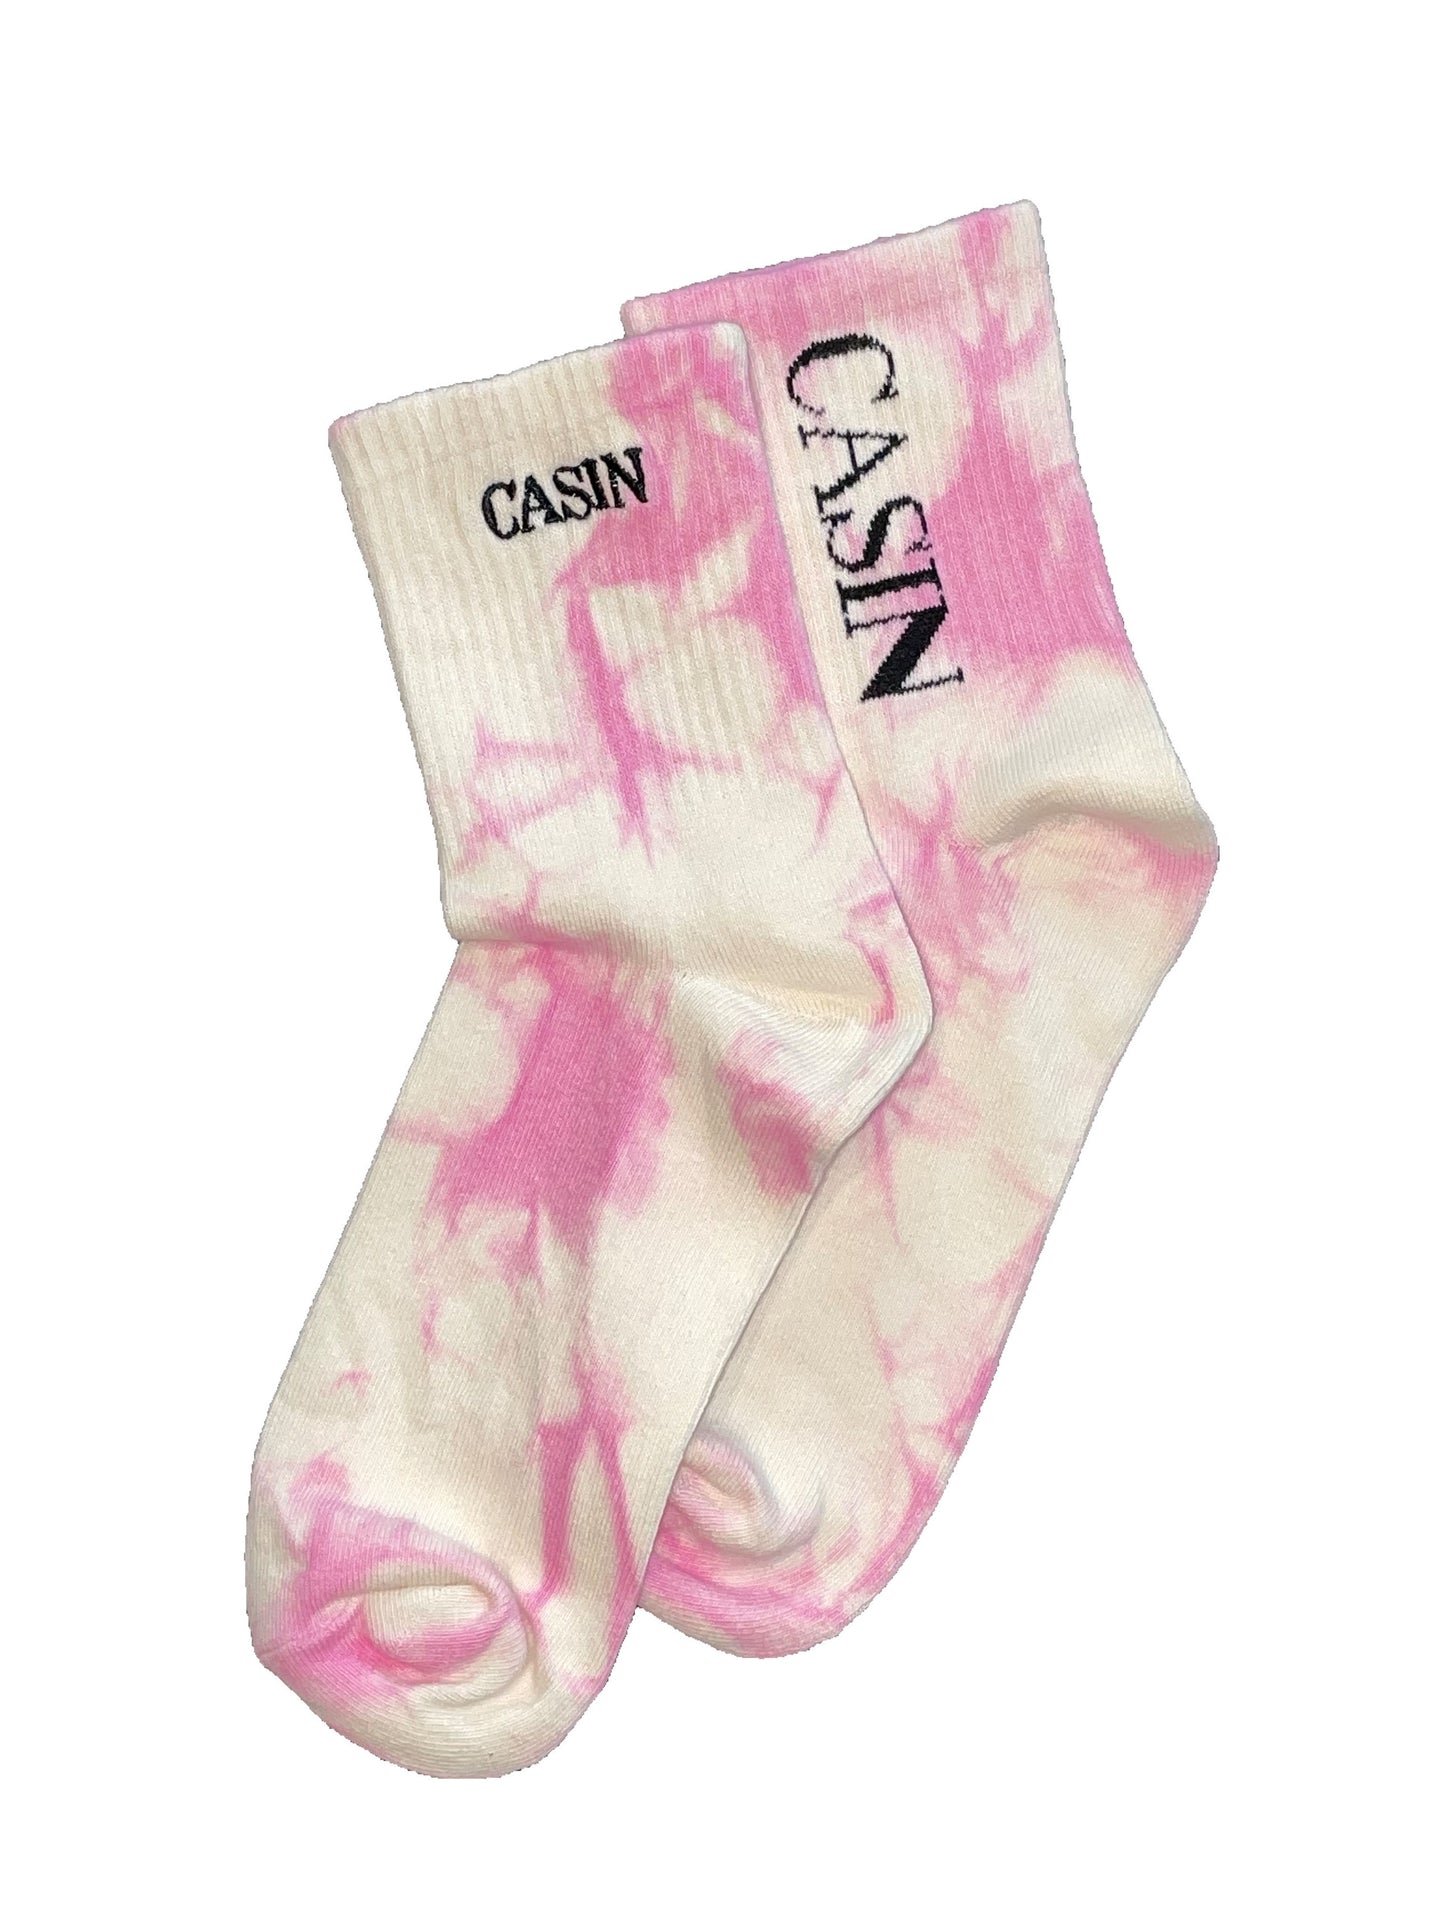 Casin Logo Socks